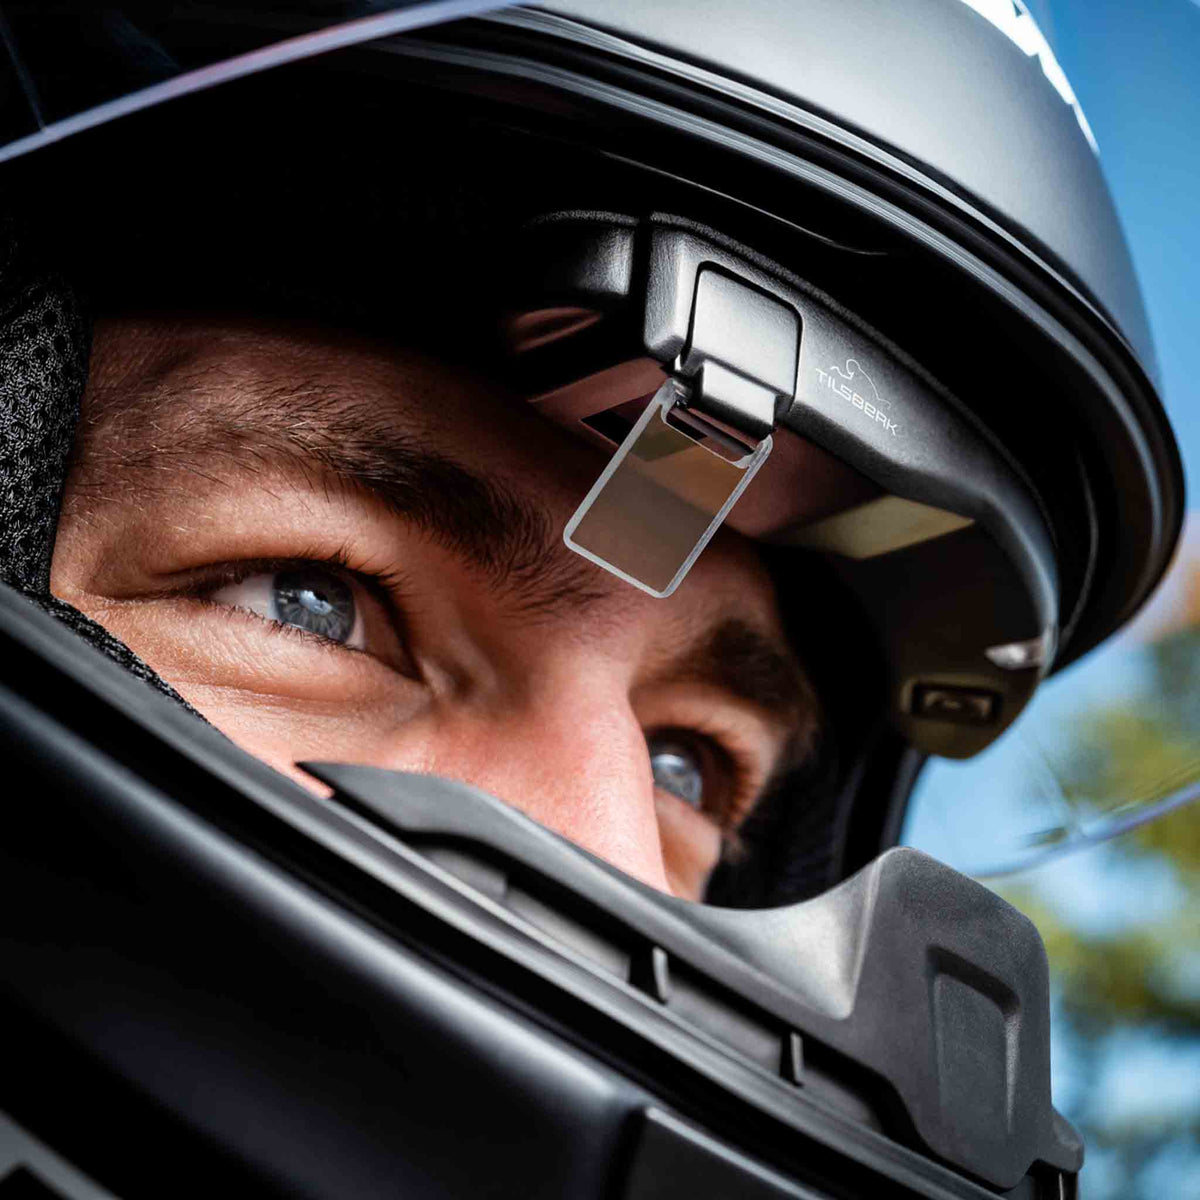 Tilsberk  Head-Up Display for Motorcyclists